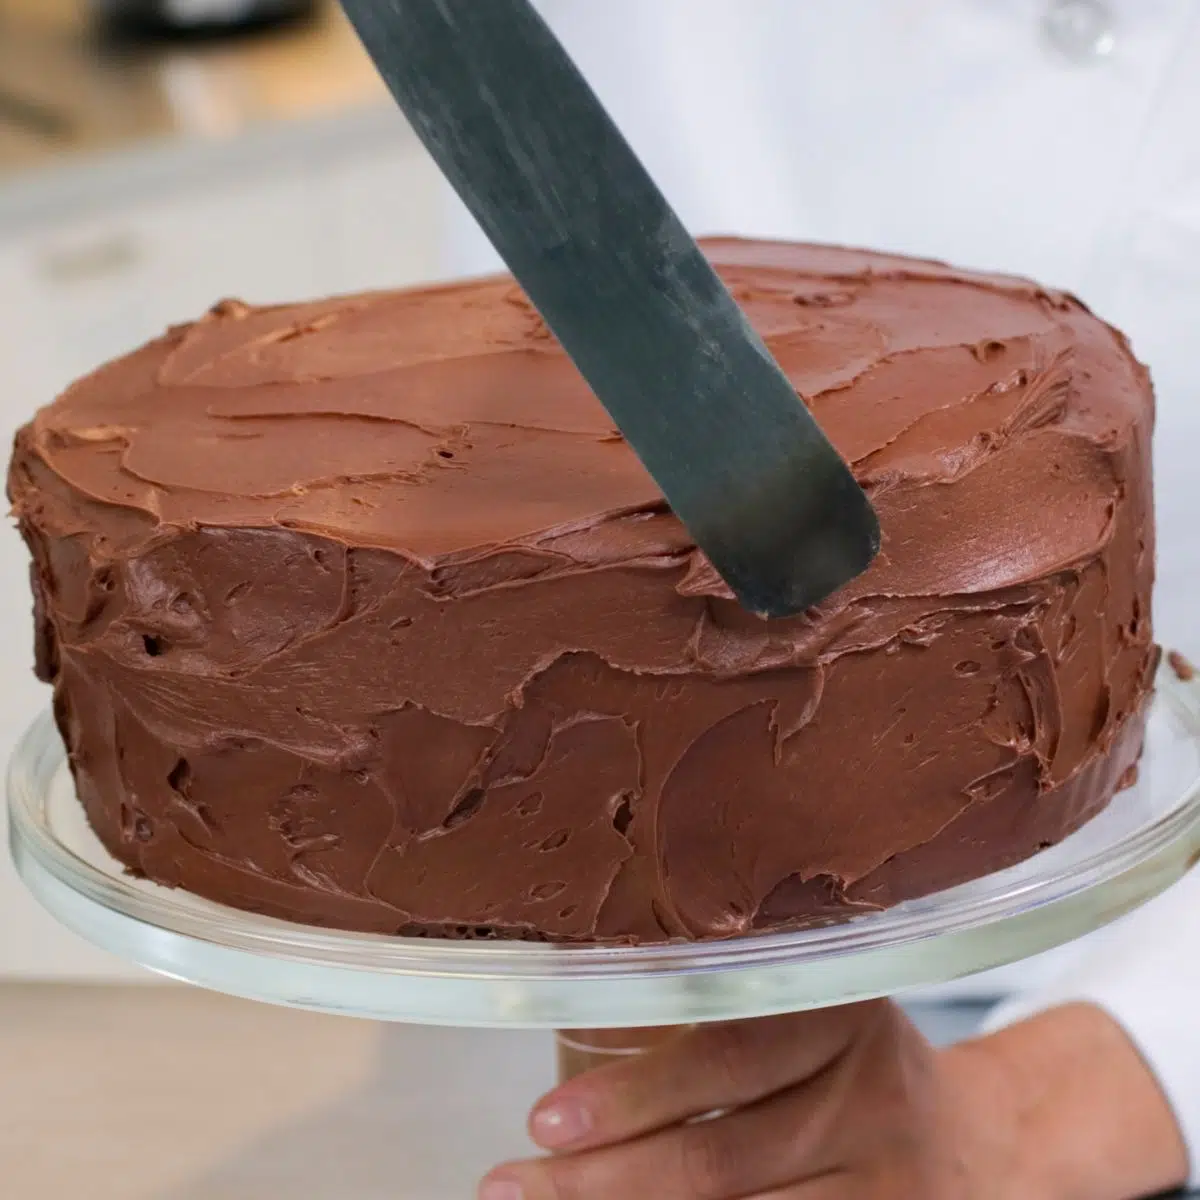 Image carrée montrant le glaçage d'un gâteau.